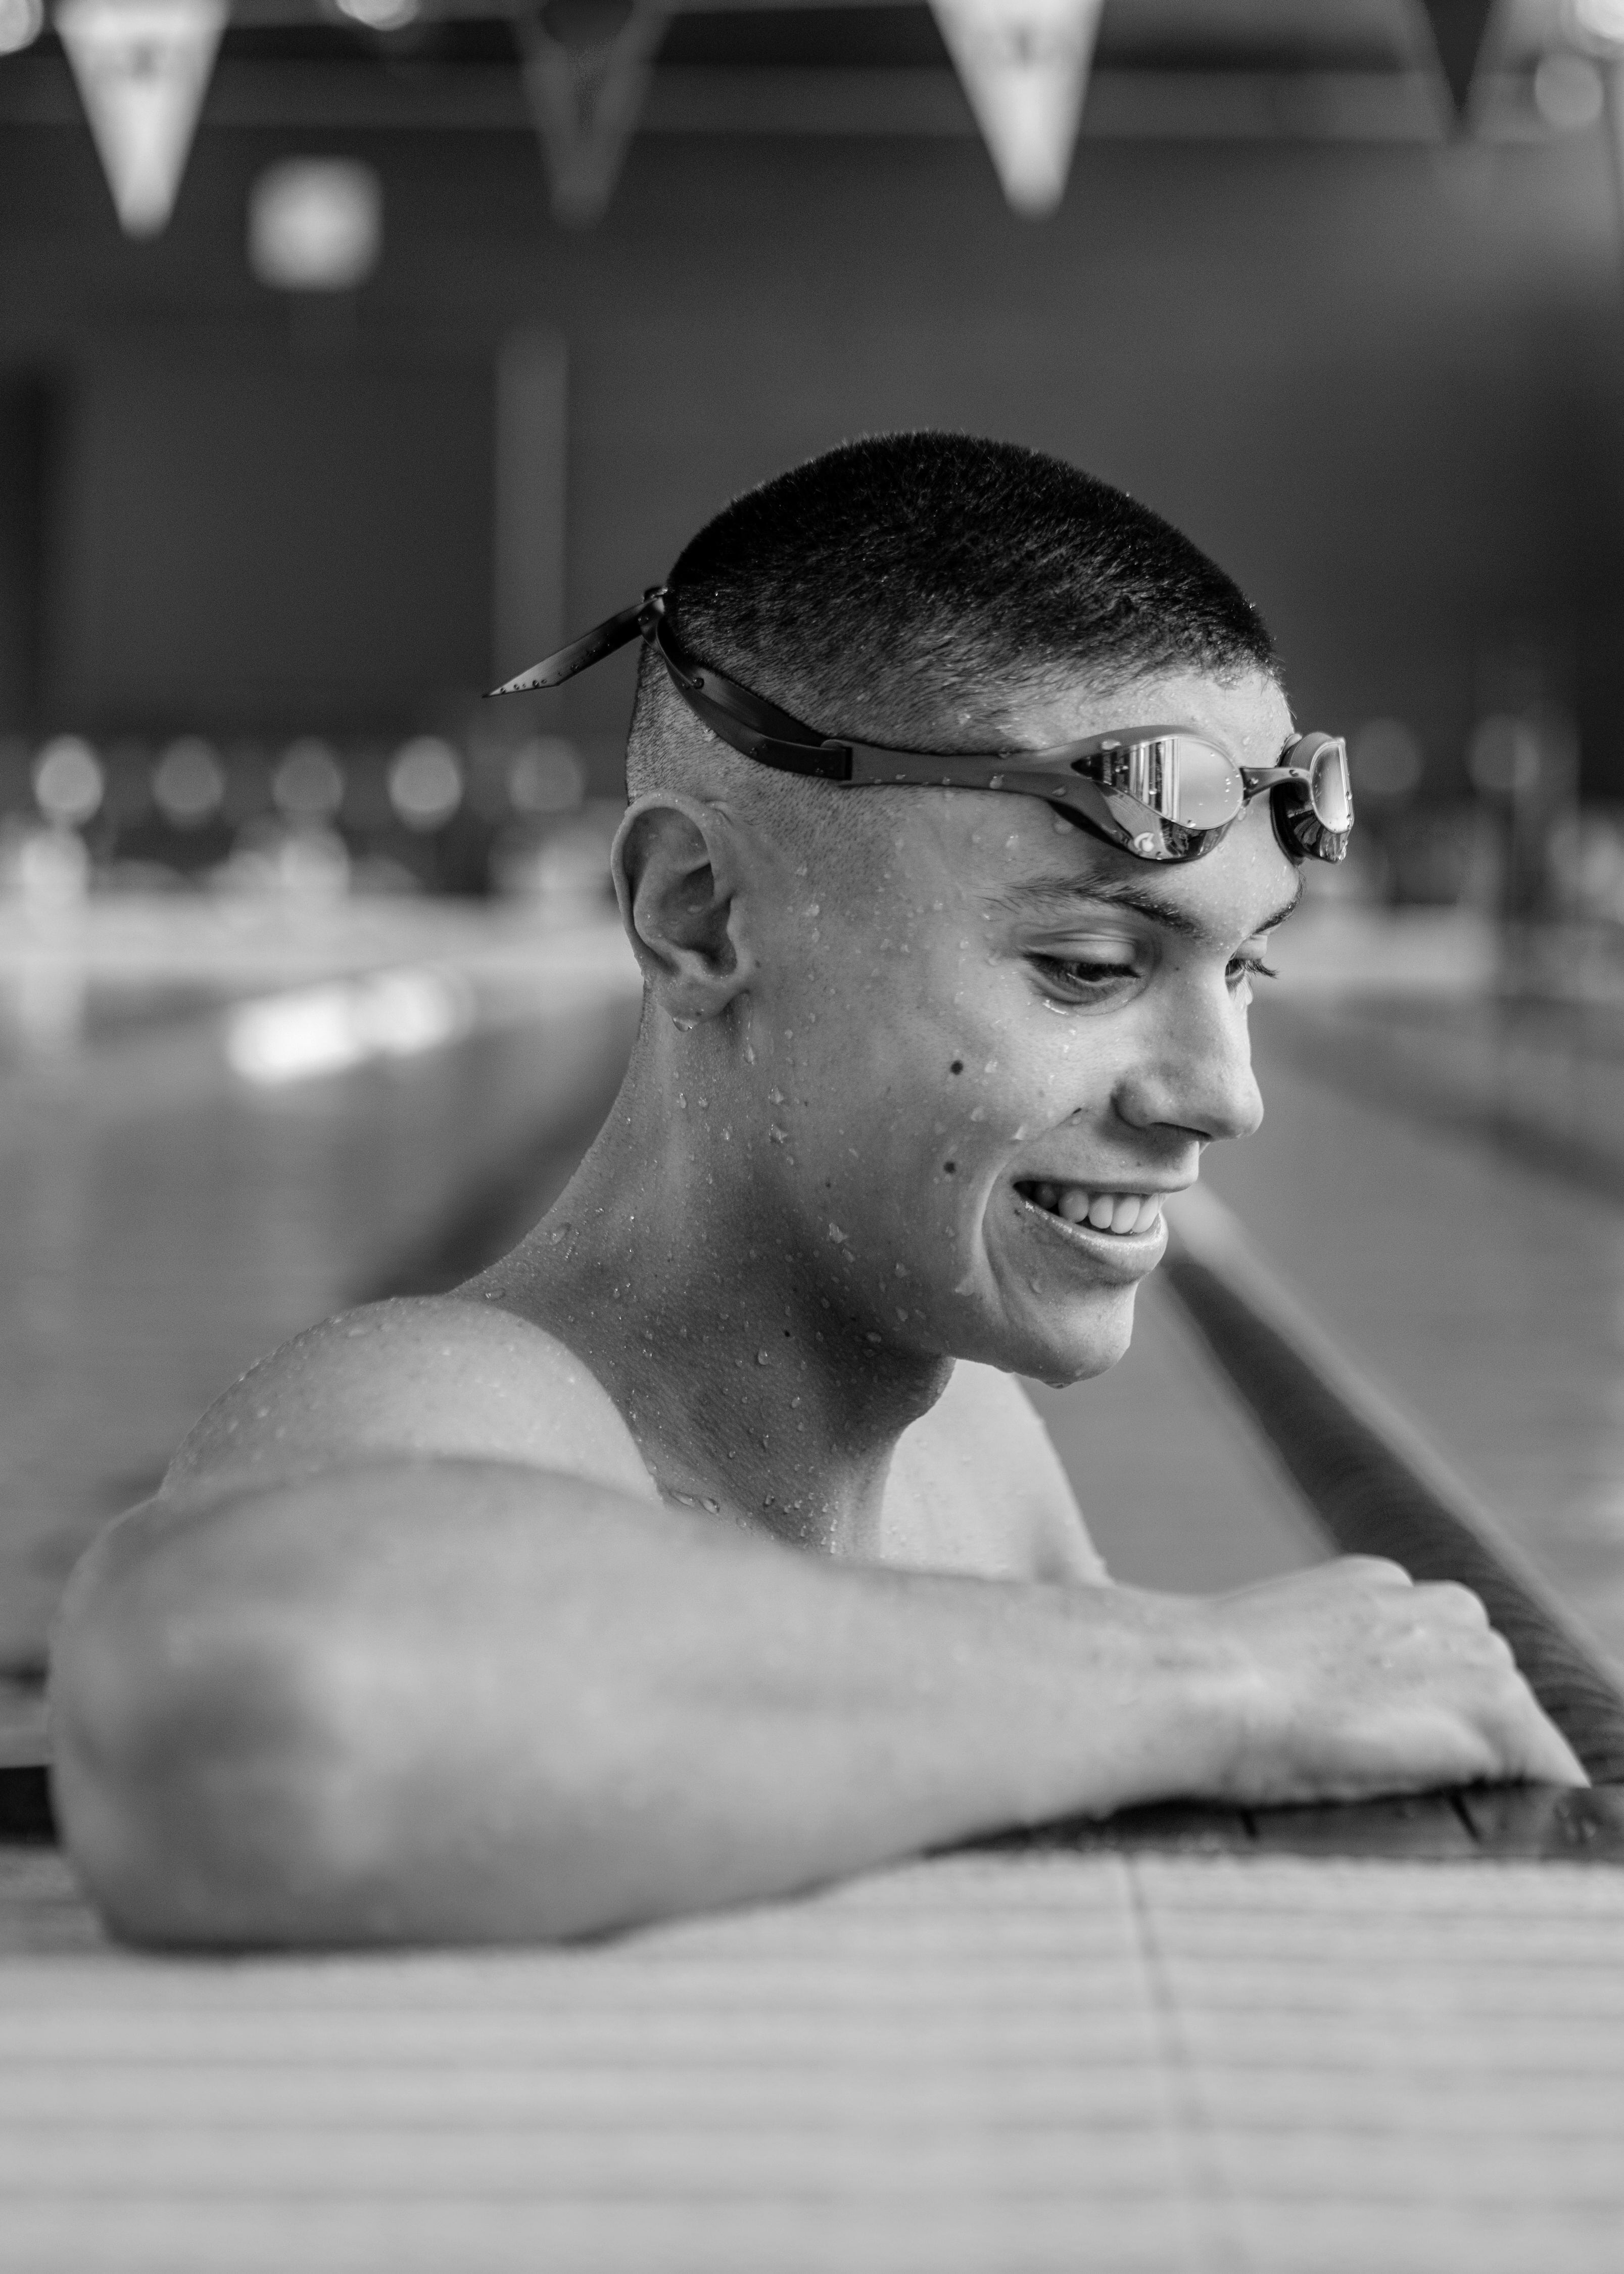 El nadador, durante su entrenamiento matinal.